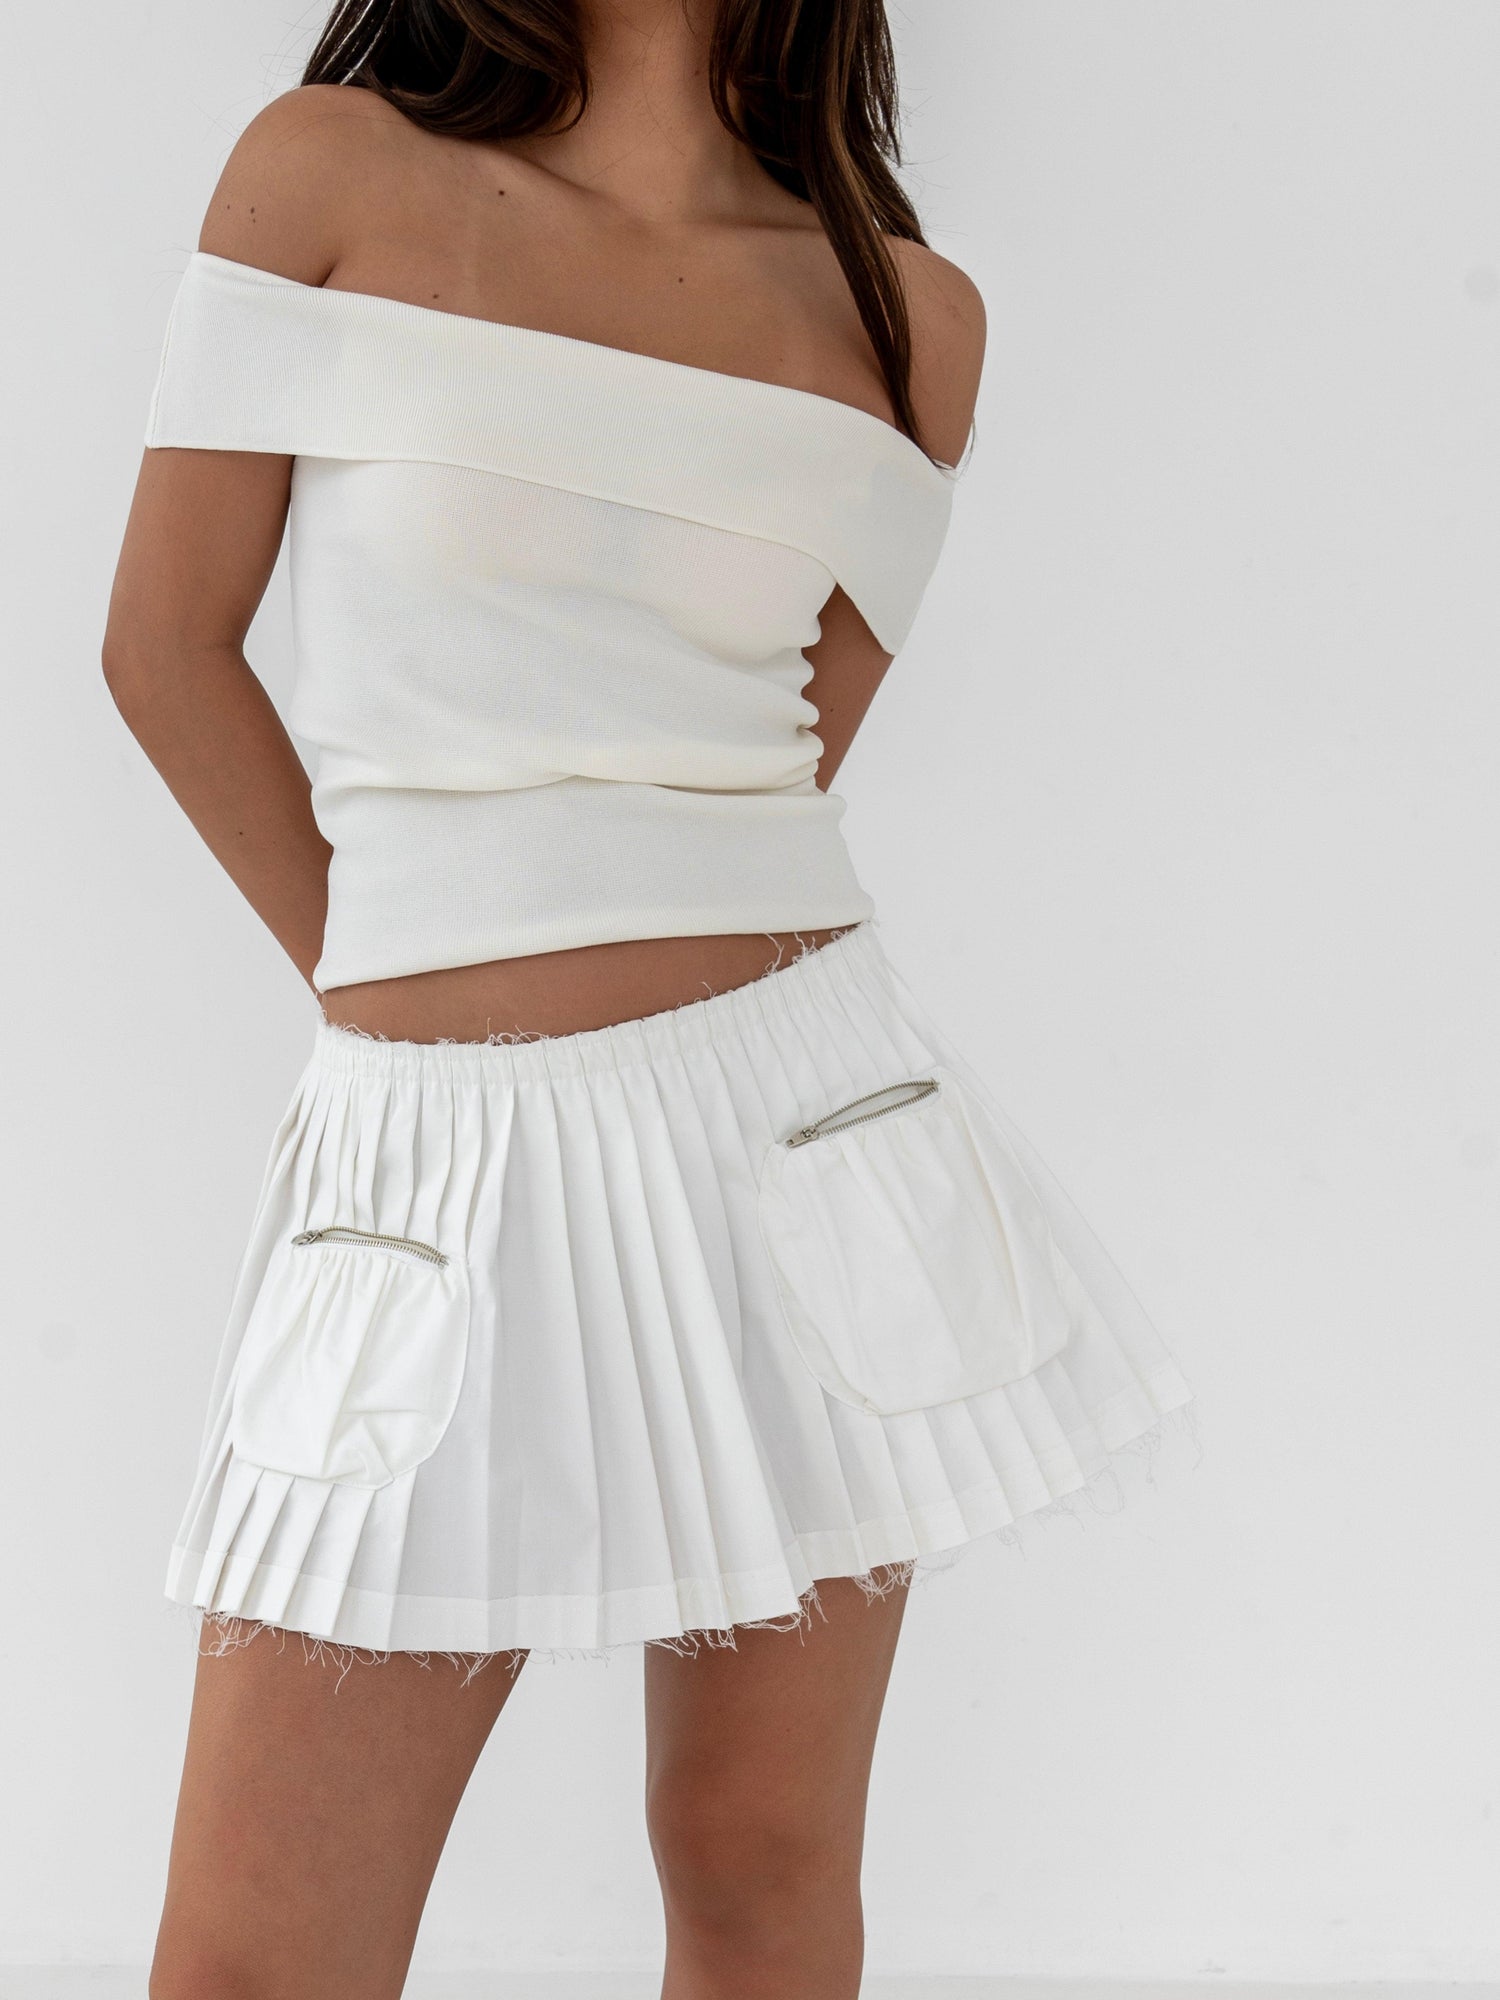 Jade Low Waist Pleated Skirt, White - The Bekk